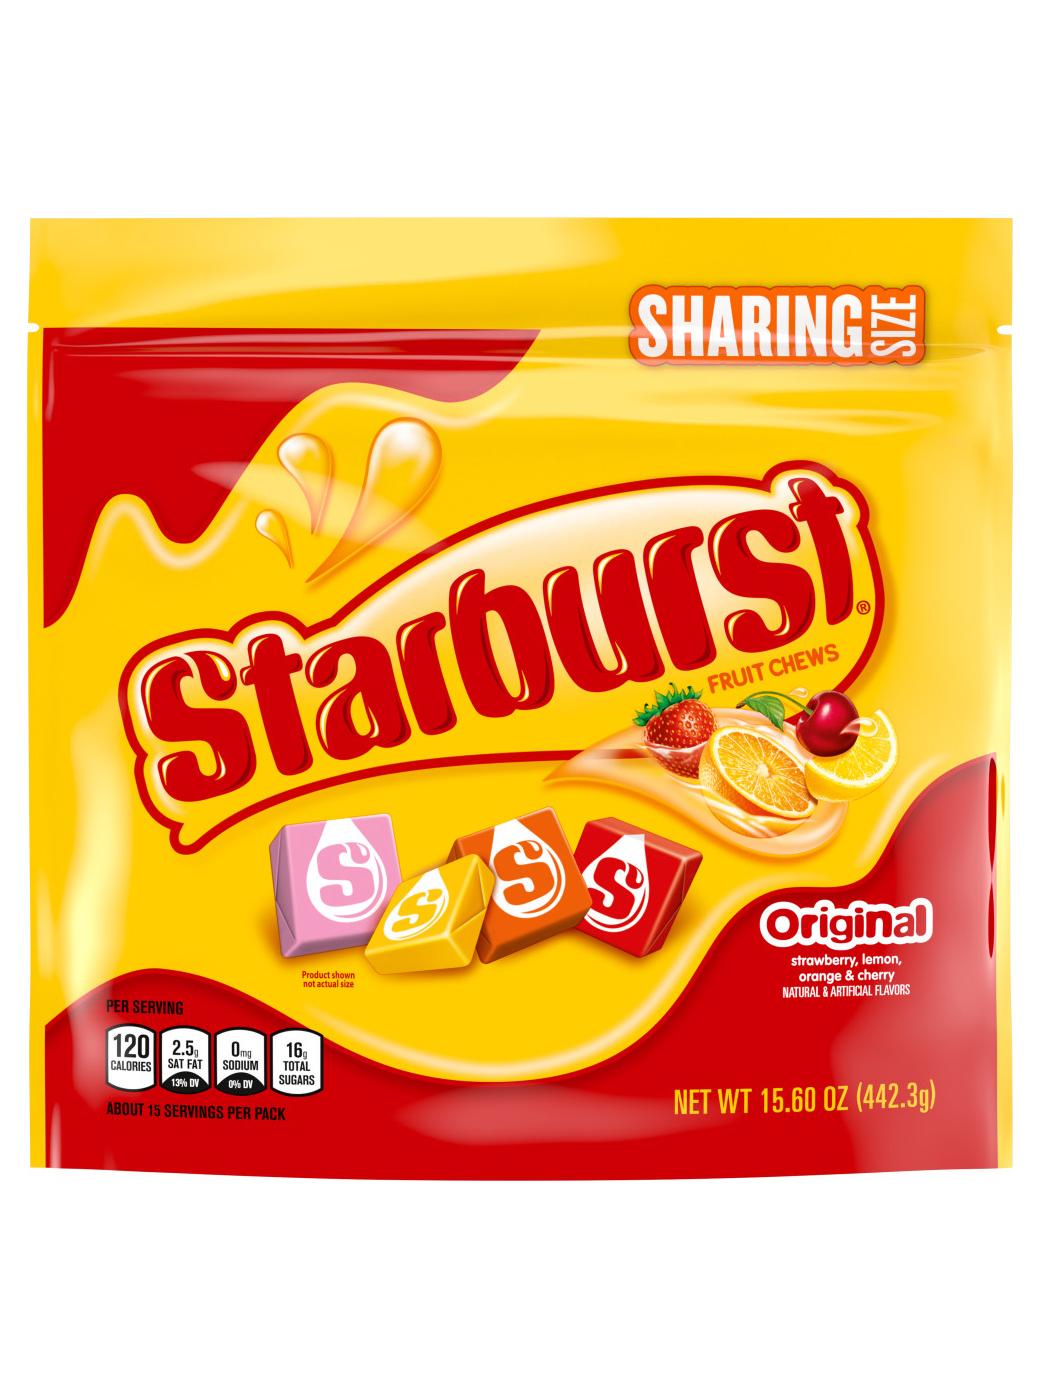 Starburst Original Fruit Chews - Sharing Size; image 1 of 7